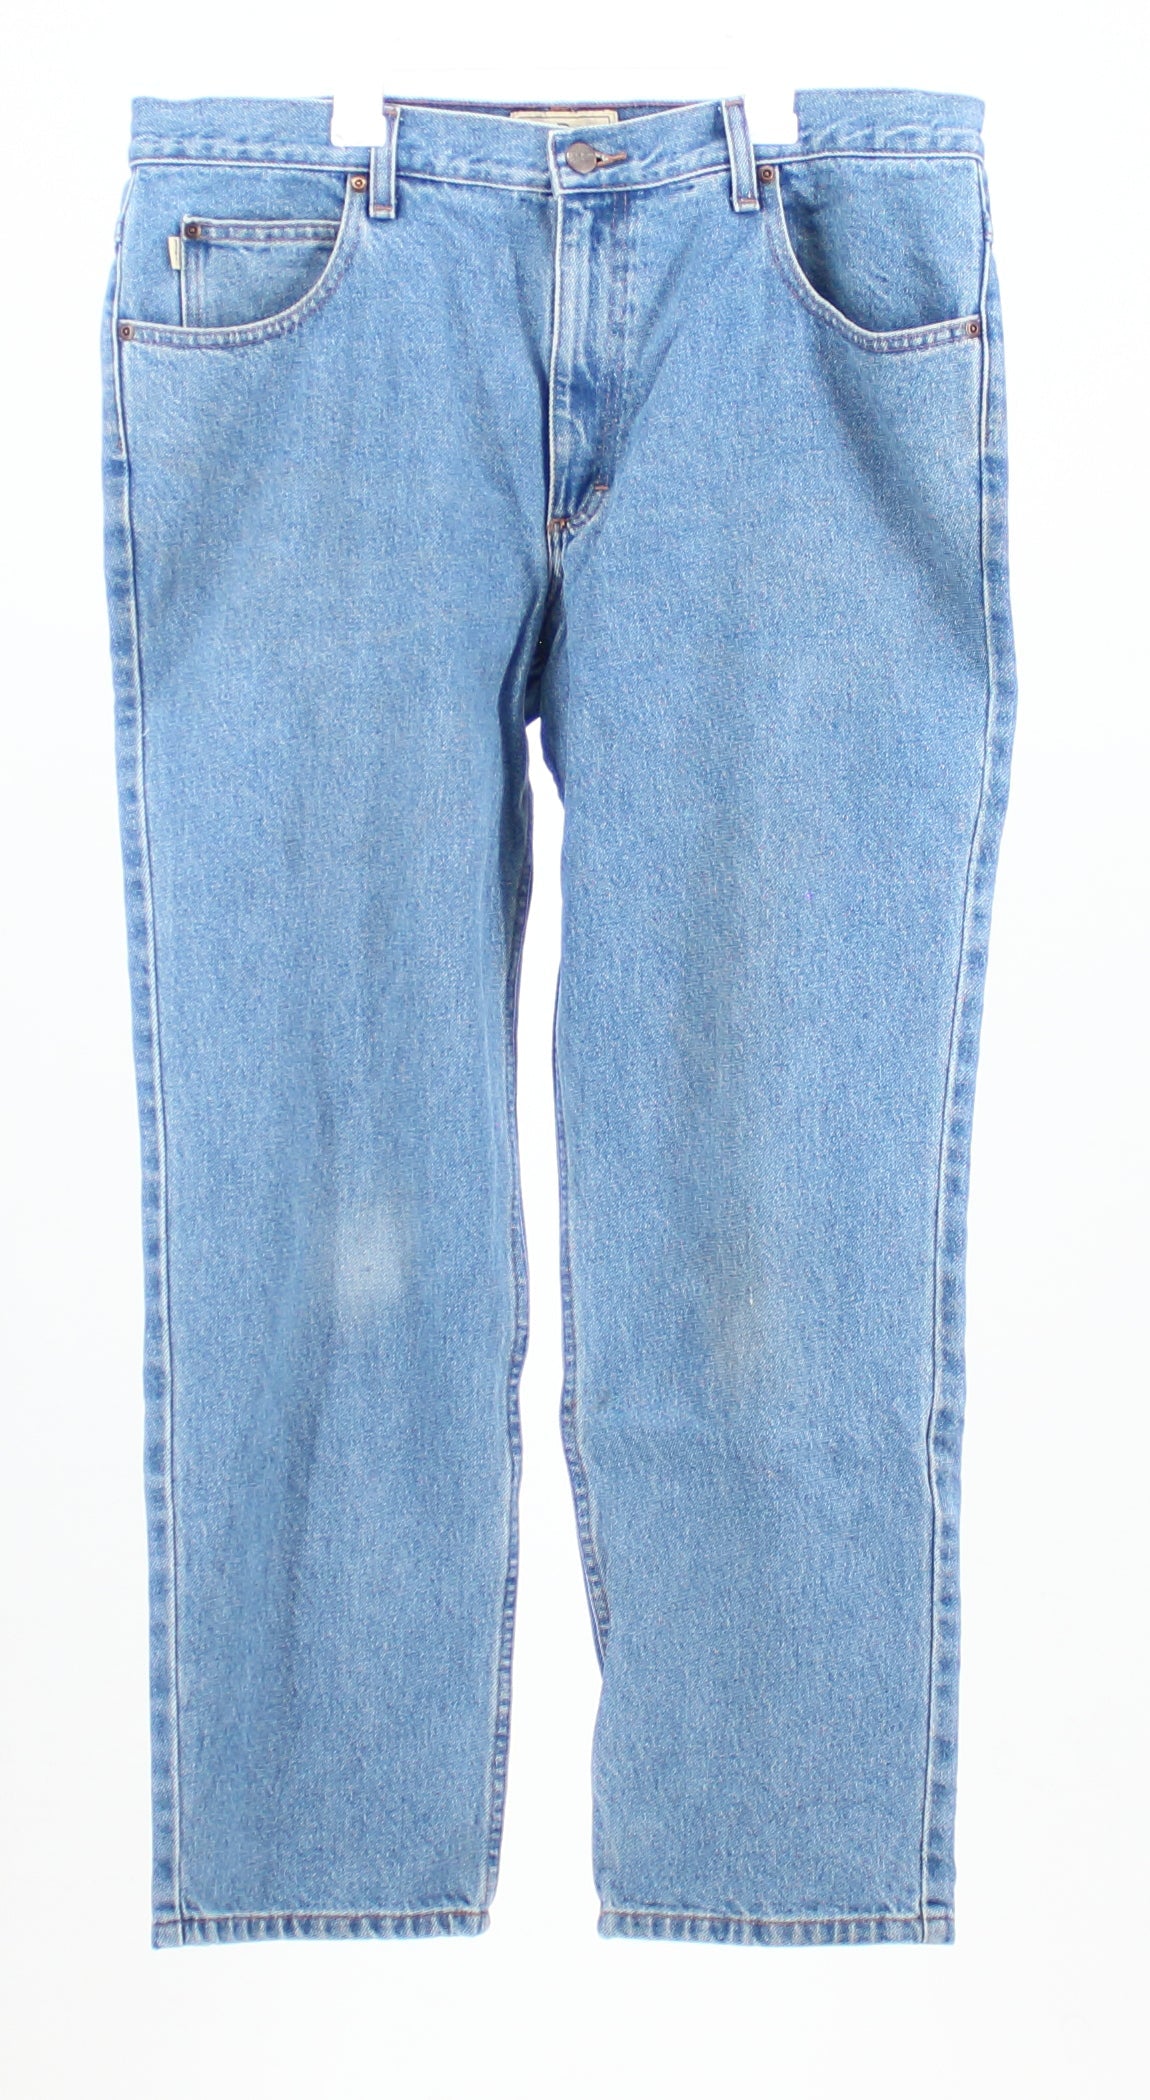 L.L.Bean Classic Fit Medium to Light Washed Denim Jeans